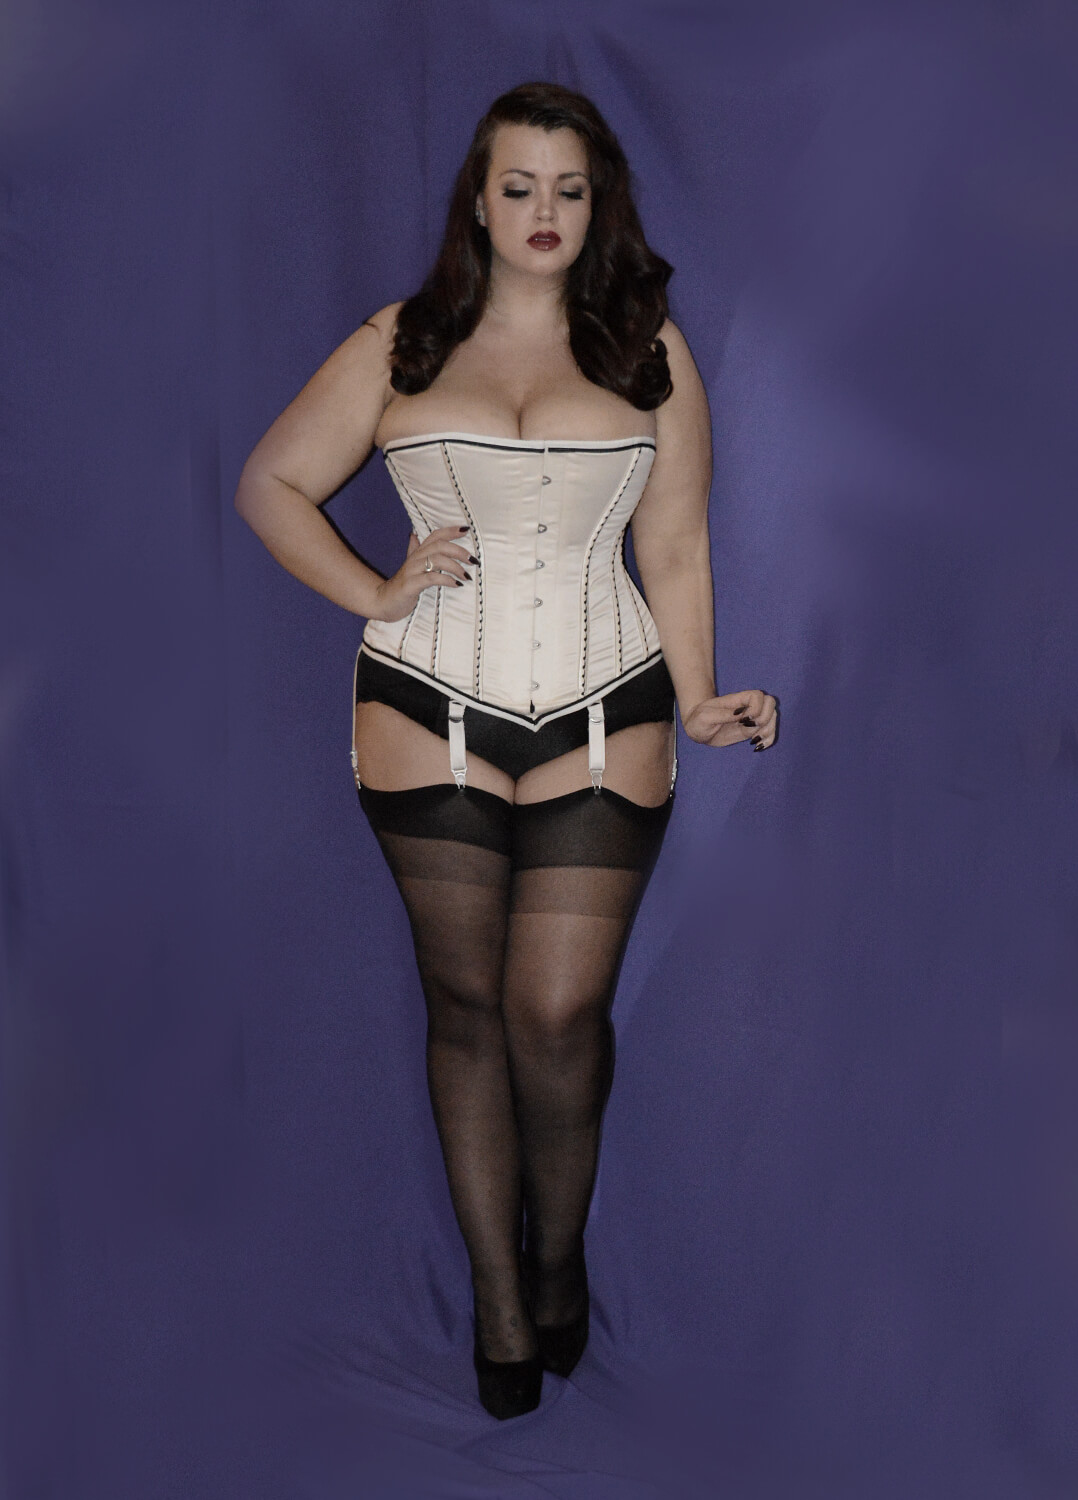 BigBellesMag - Georgina Horne (George) @fullerfigurefullerbust UK based  plus size clothing&lingerie blogger fullerfigurefullerbust.com 💄Beauty  🍽Food 🐀Animals 🏋🏻‍♀️Gym #charlotteenvrac #bigbelleswomen, #curve,  #bigbellesMag #plussizemodel #curvy